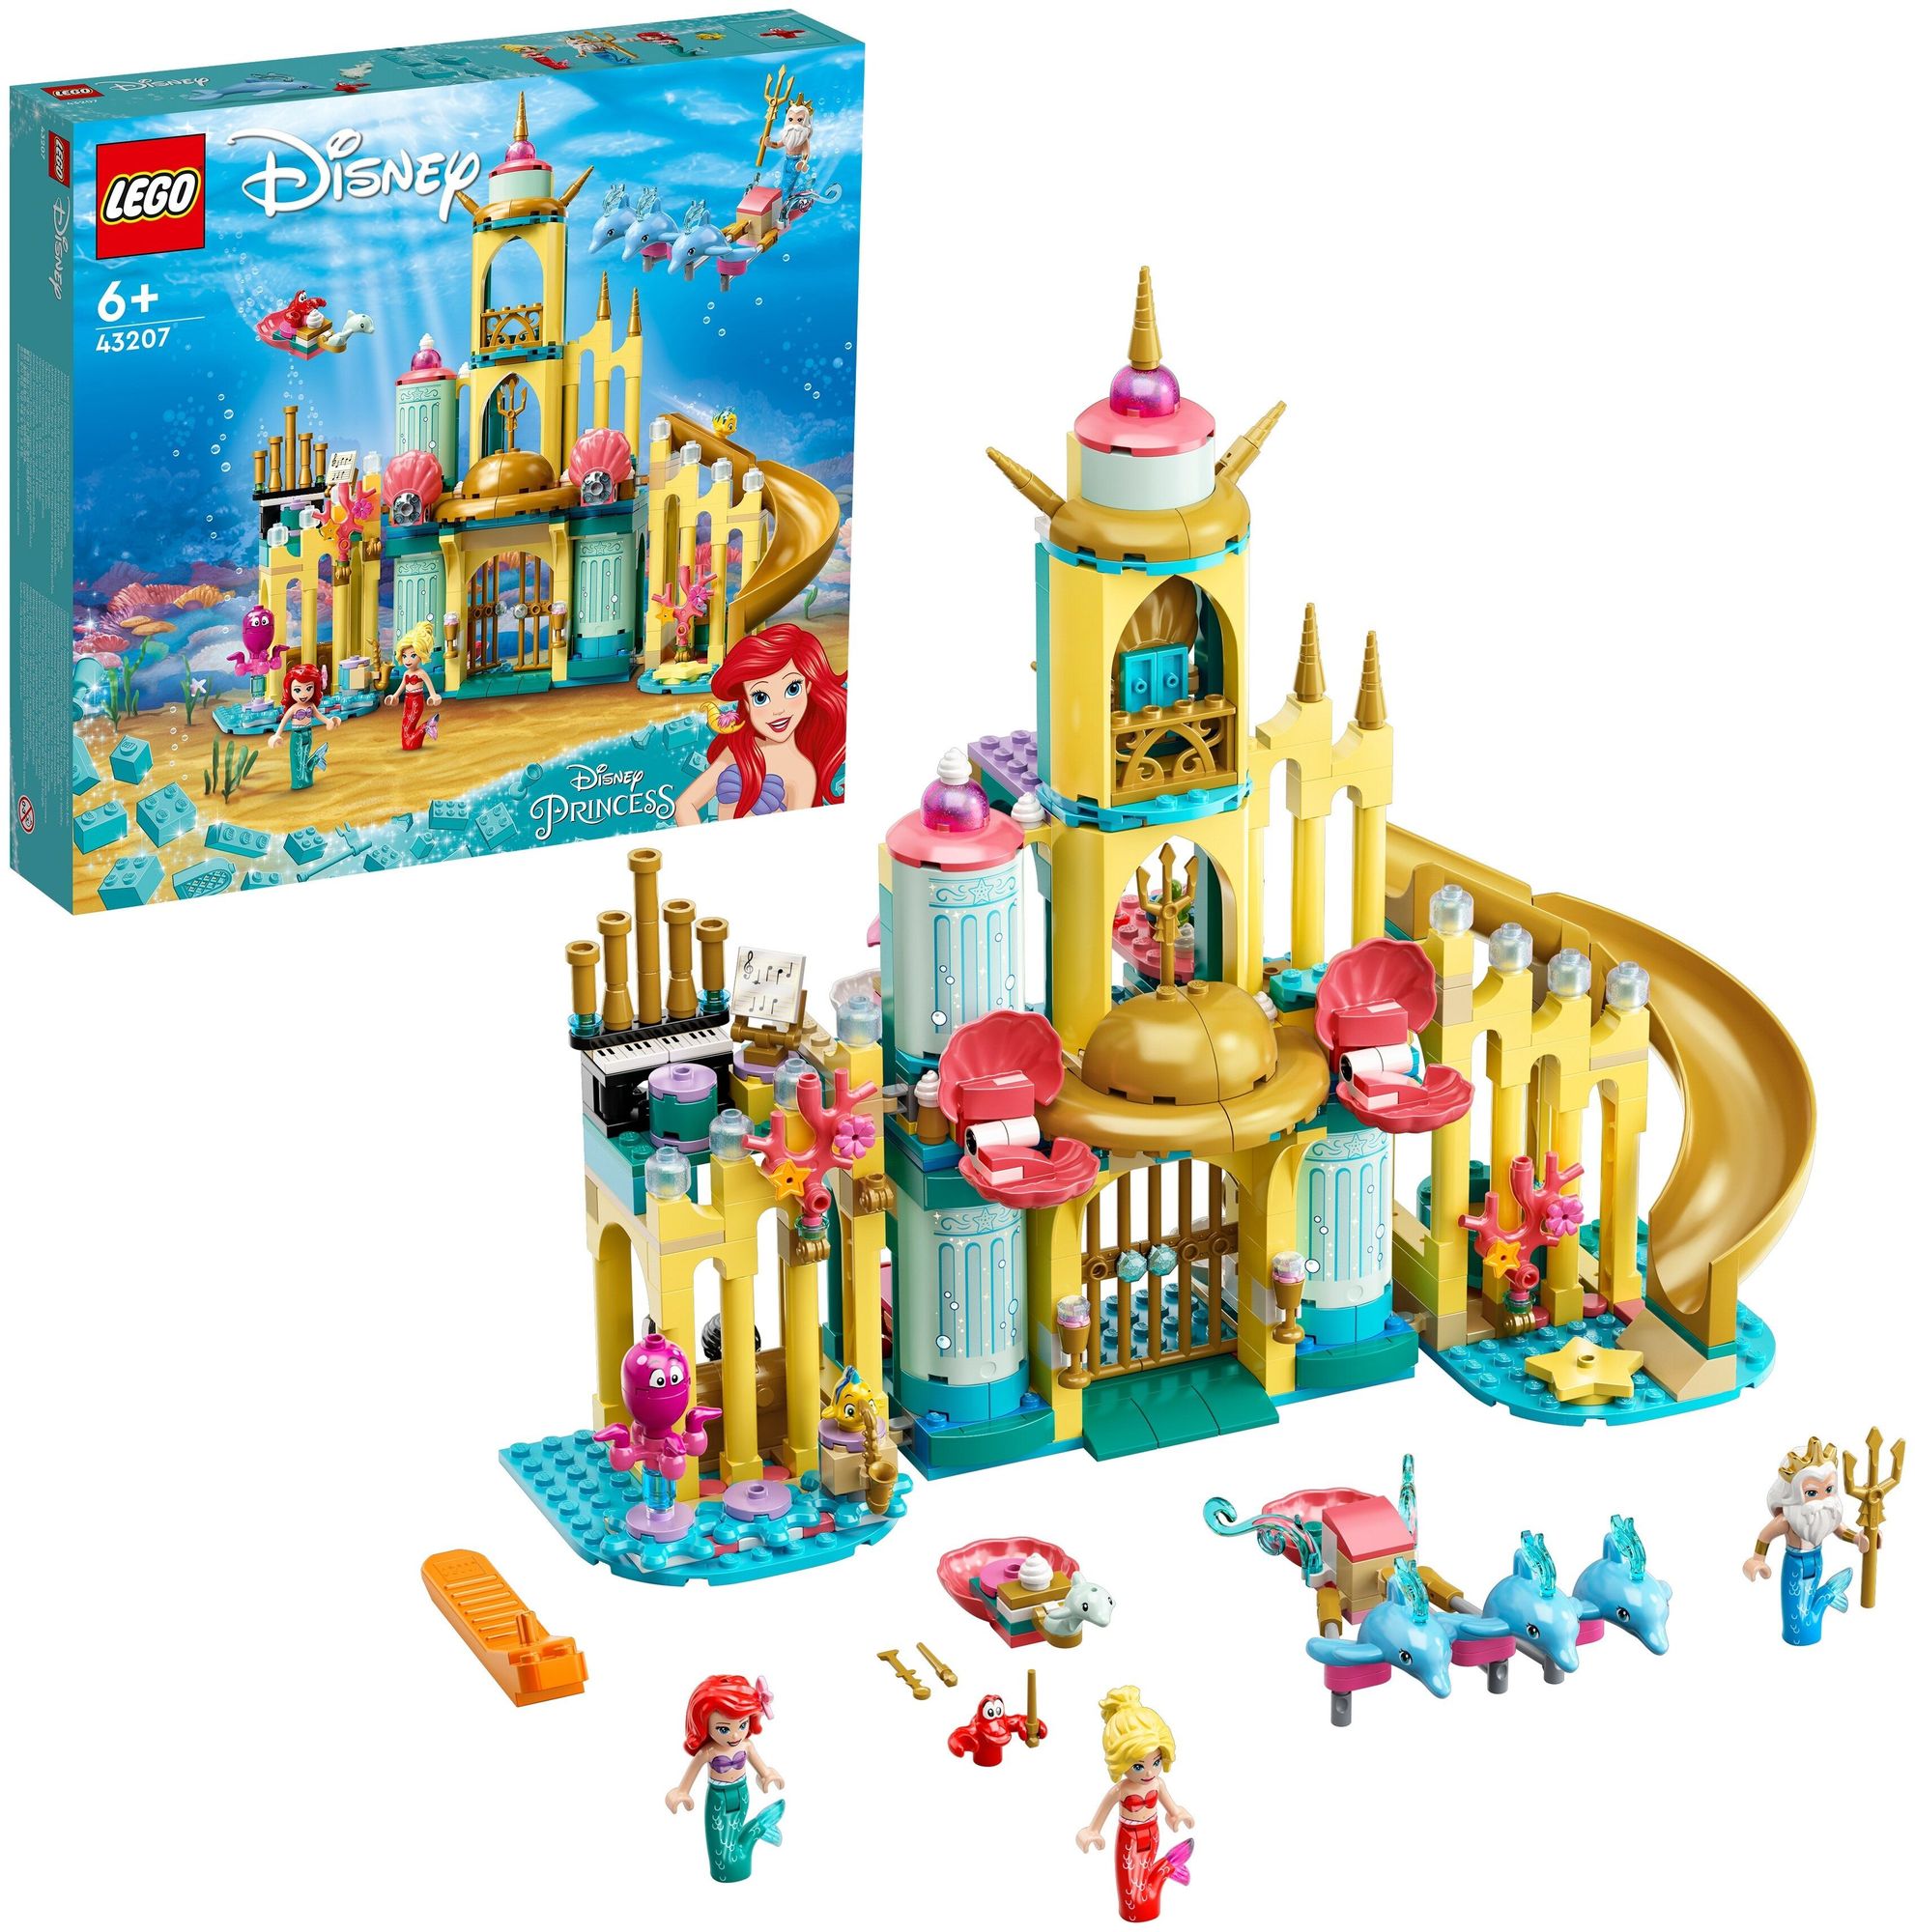 Конструктор LEGO Disney Princess Подводный дворец Ариэль 43207 игровой набор disney princess дворец бэлль муверс